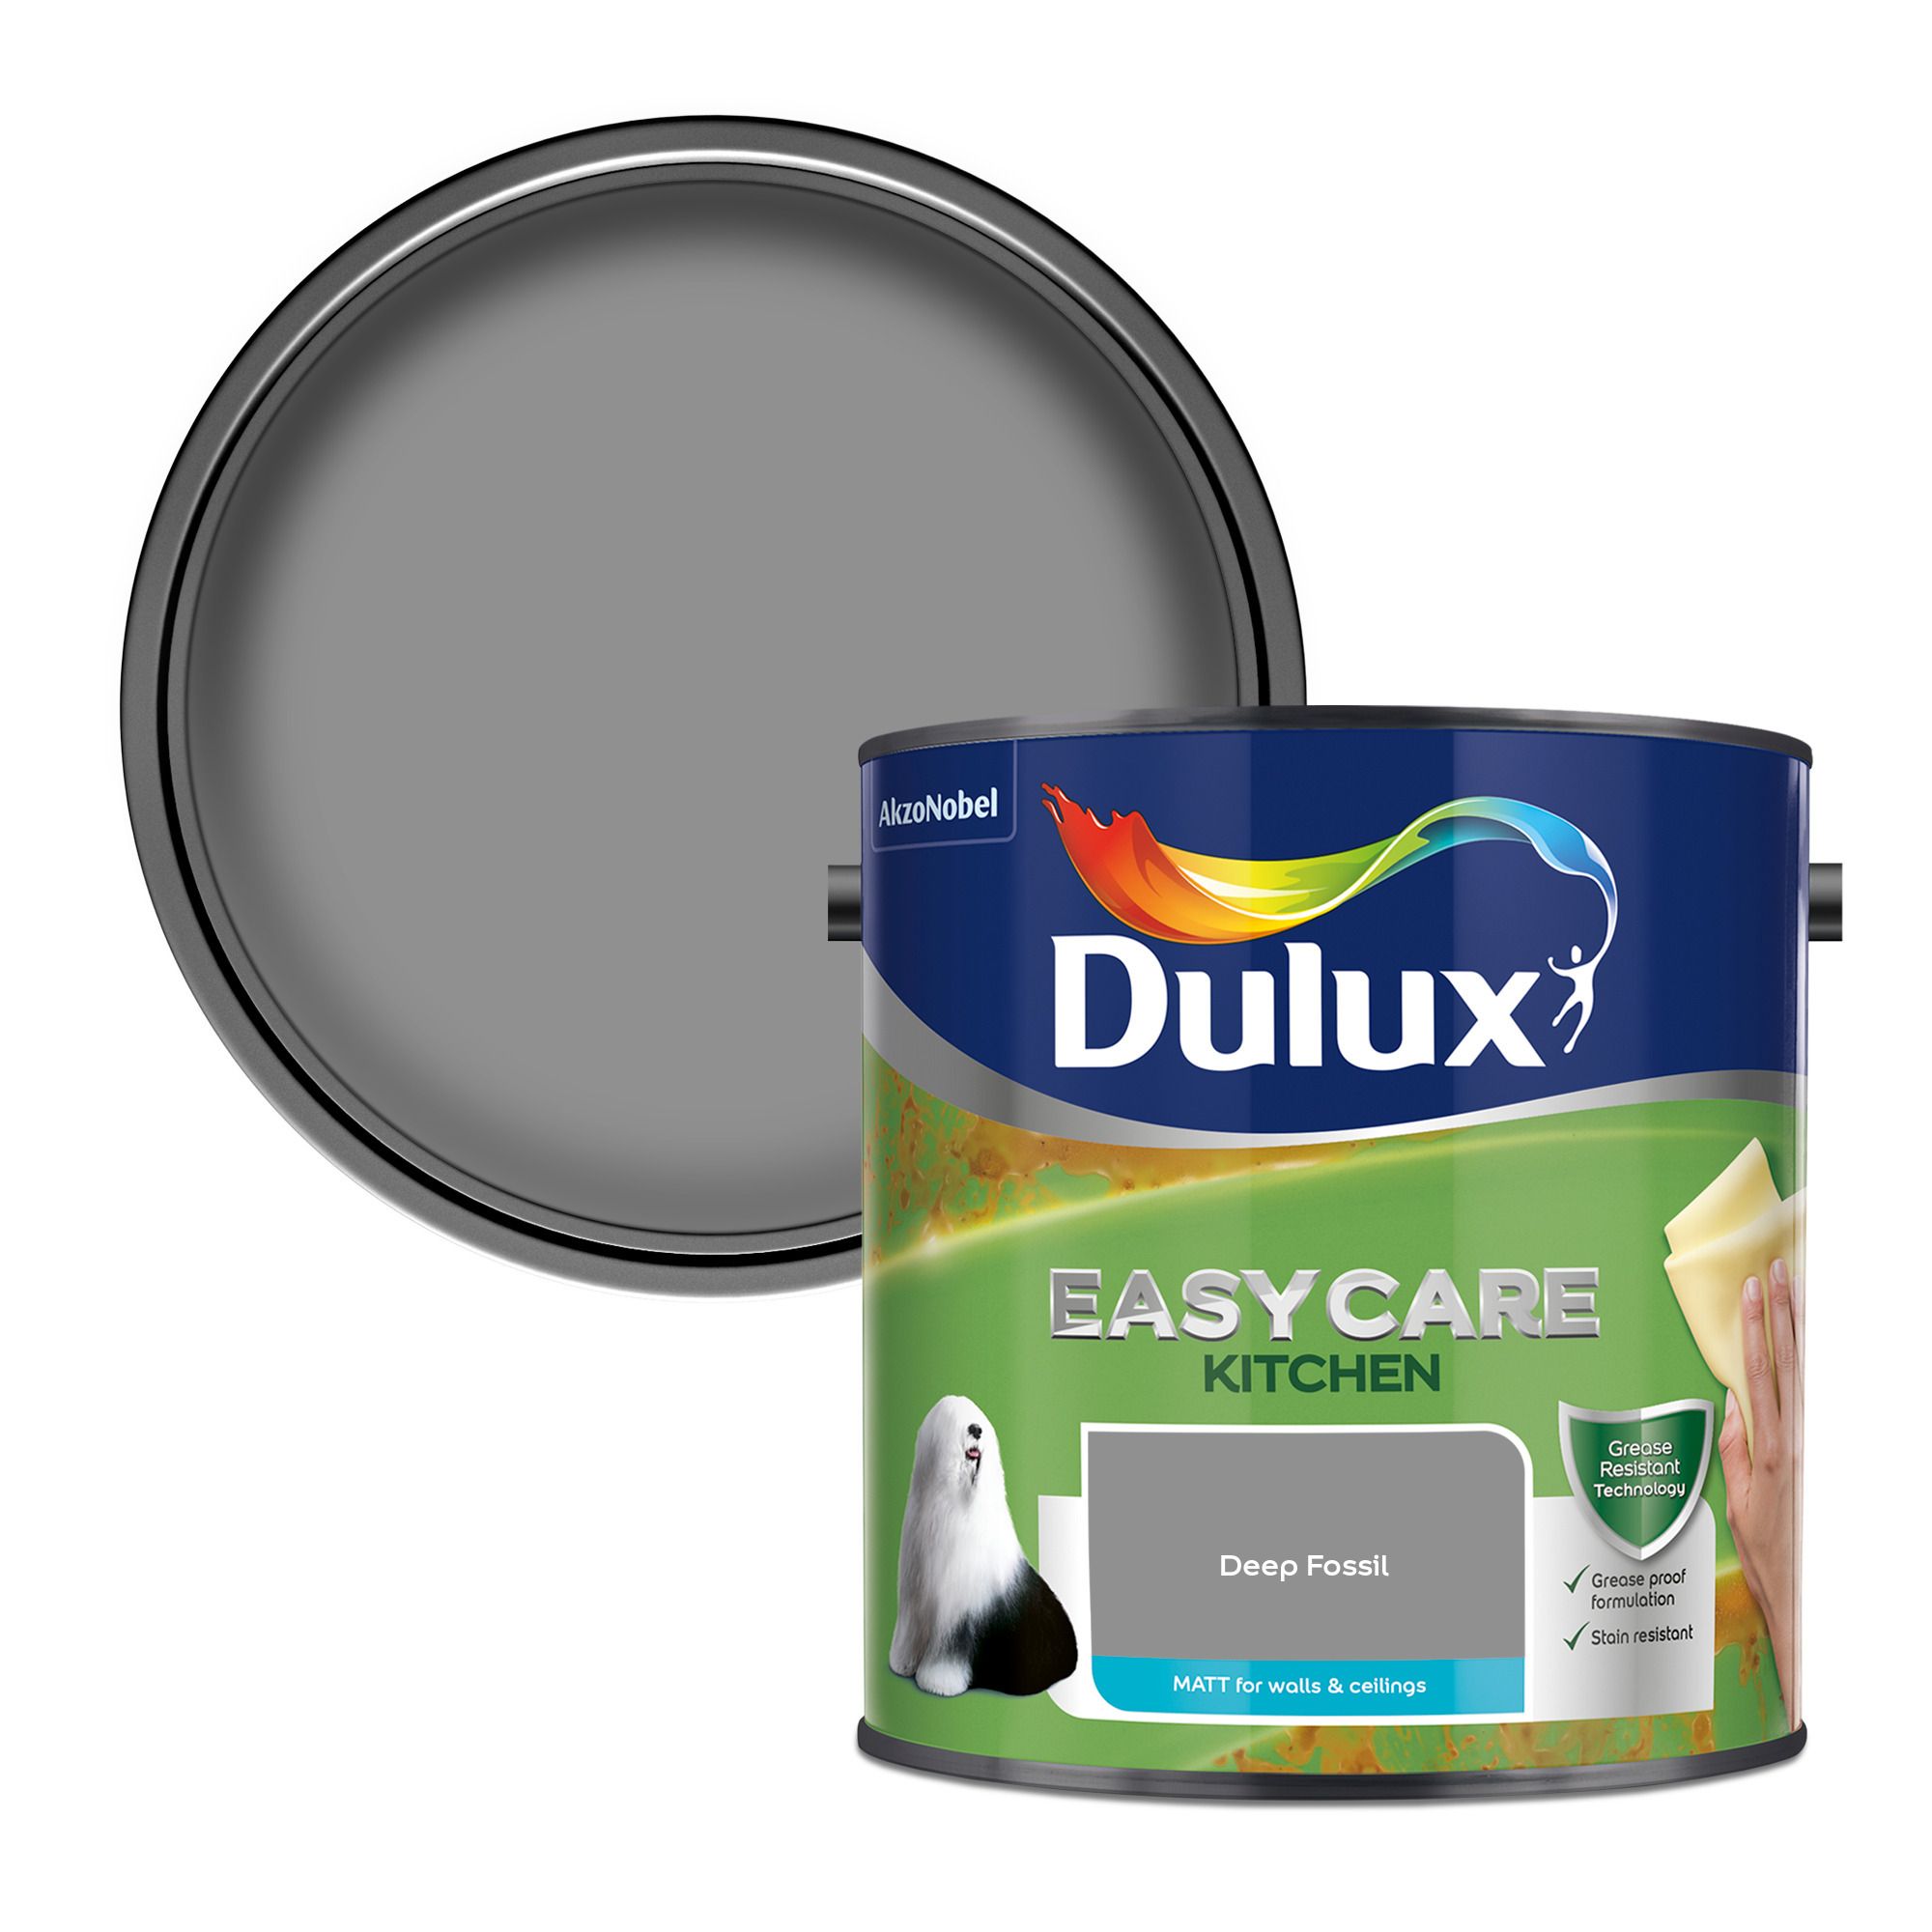 Dulux Easycare Pure brilliant white Matt Emulsion paint, 2.5L